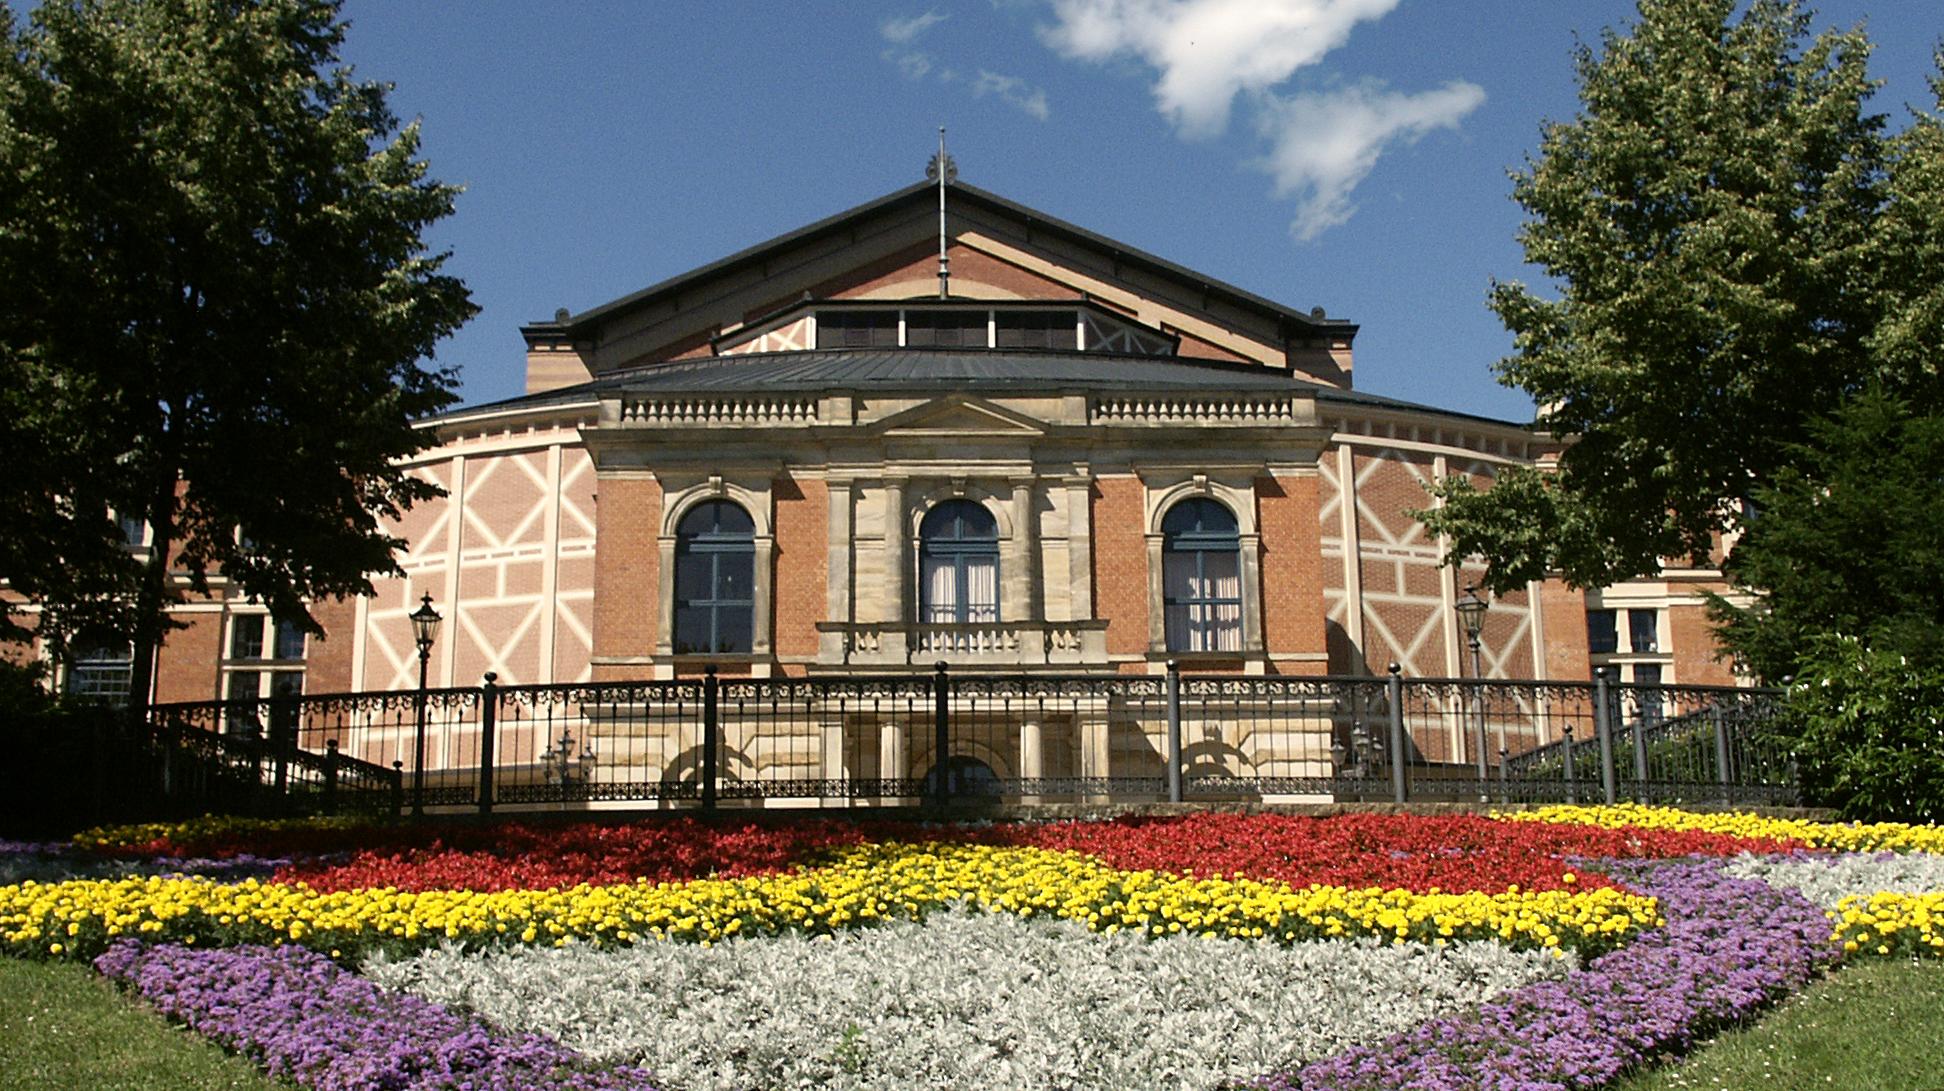 Festspielhaus Bayreuth hinter einem Blumenbeet